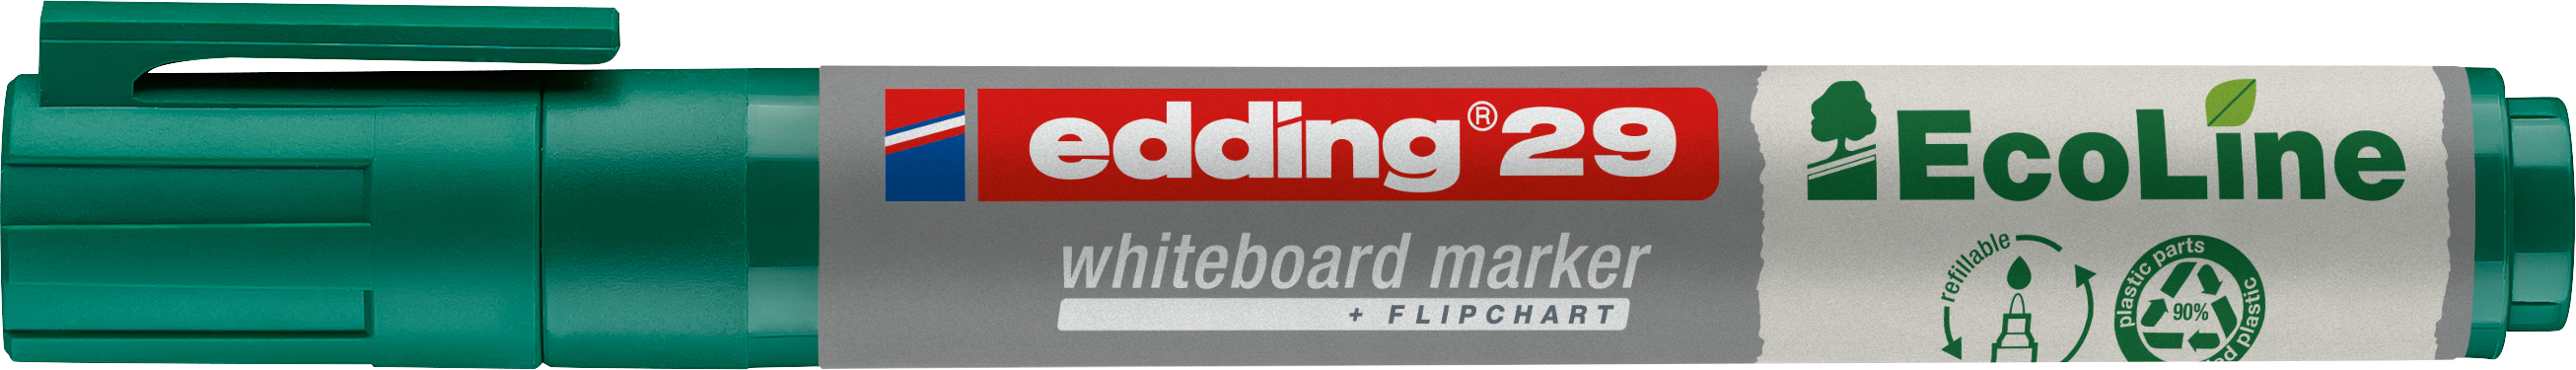 EDDING Whiteboard Marker 29 1-5mm 29-4 vert vert